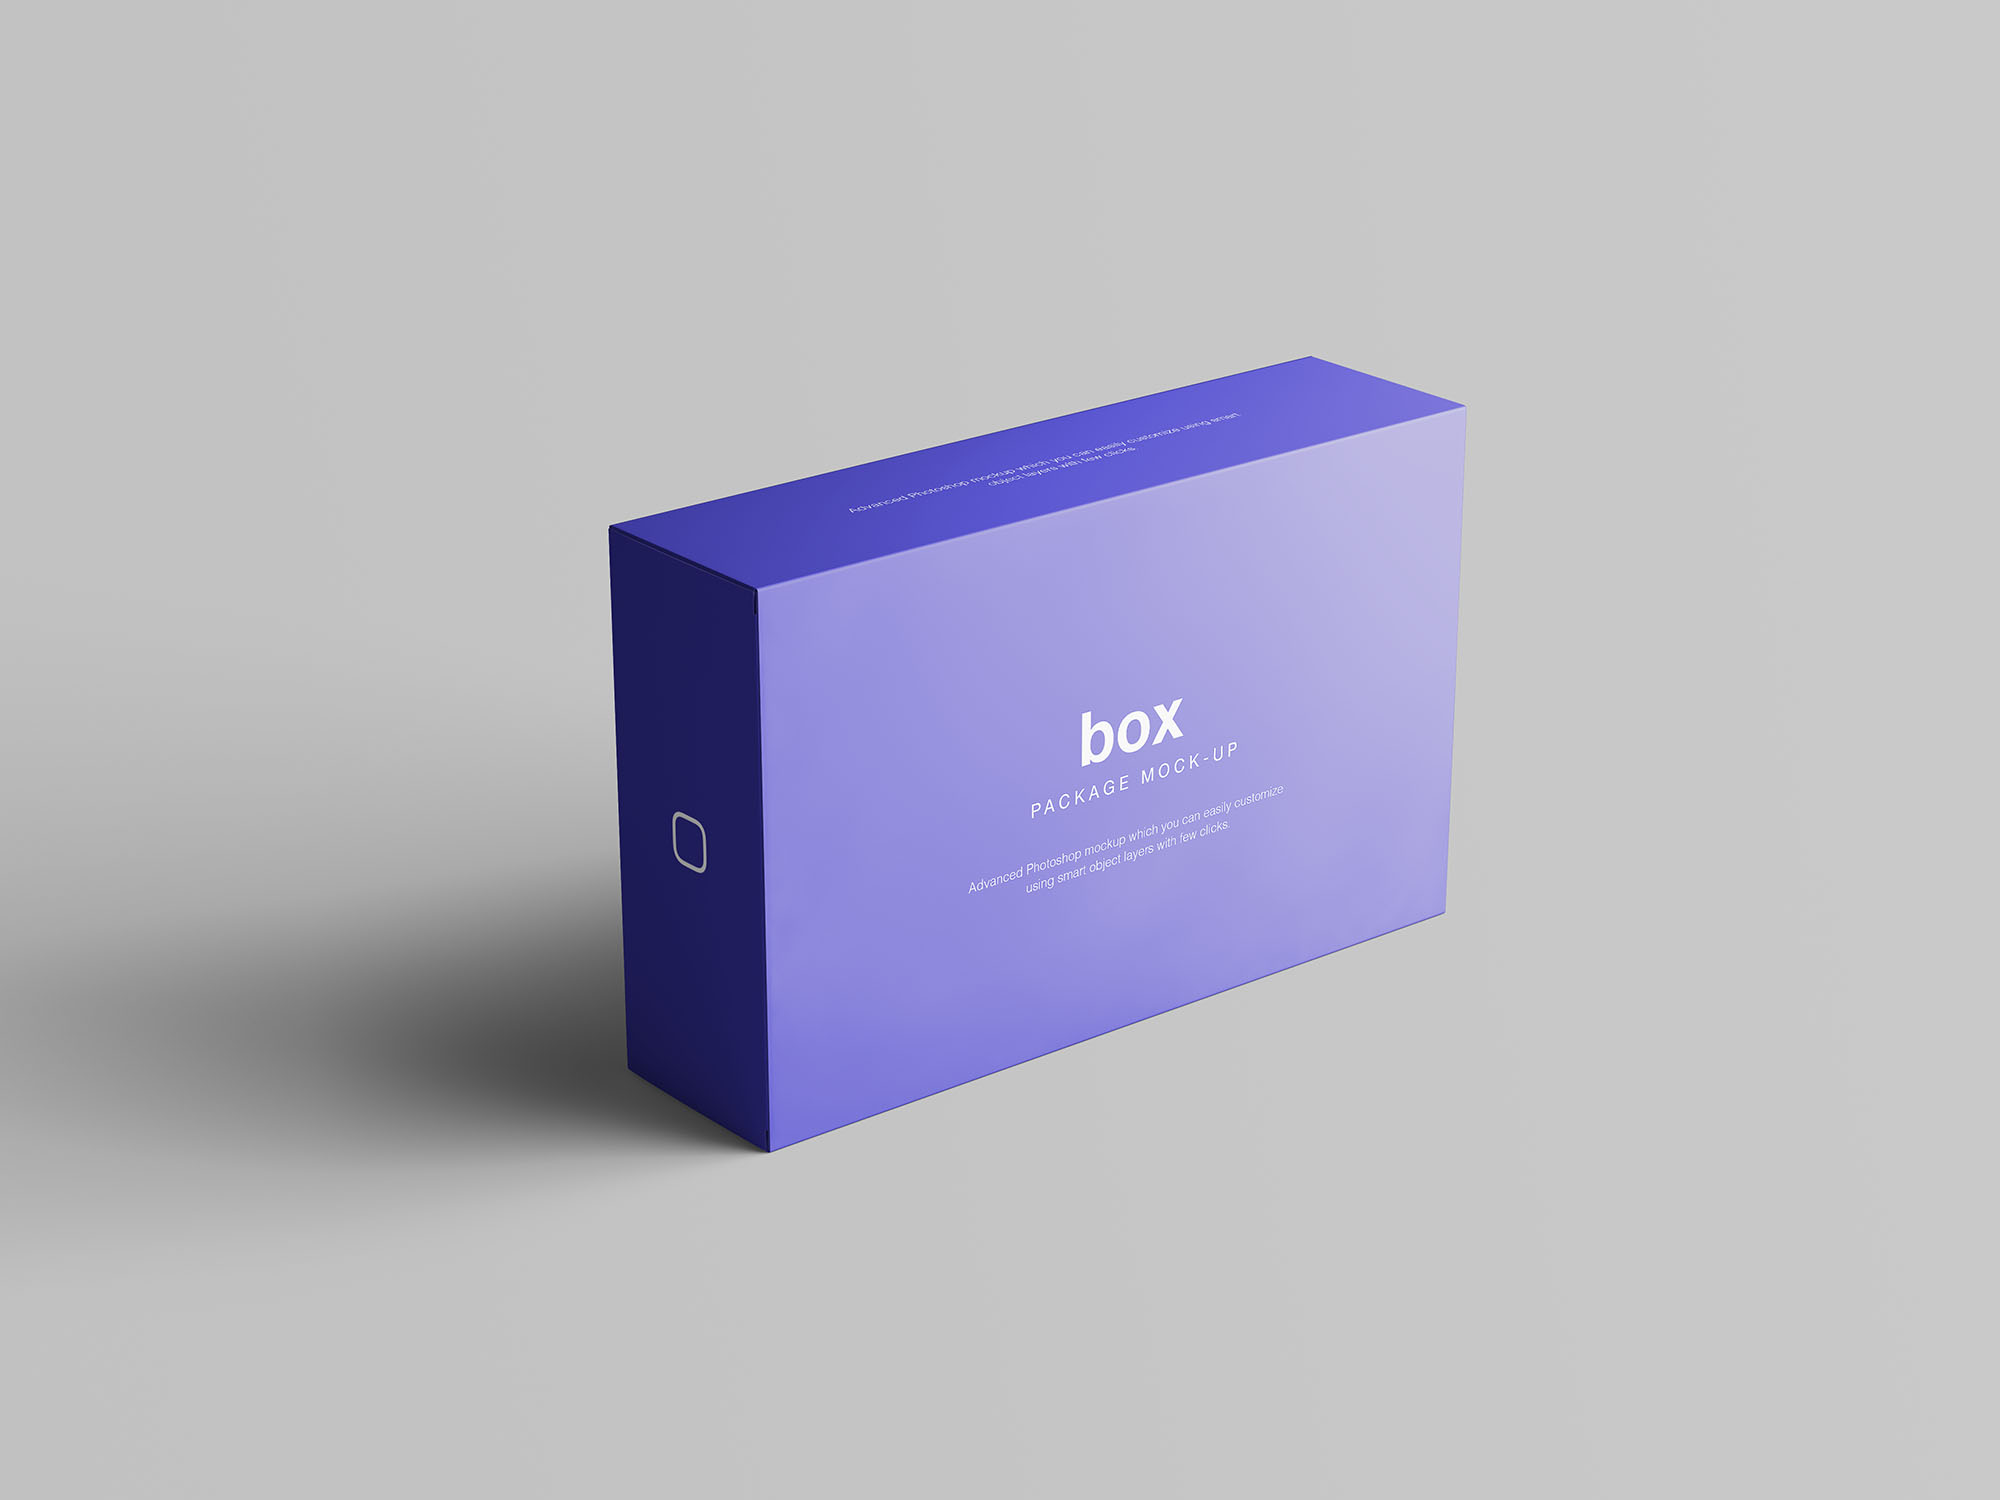 精品礼品/产品包装盒外观设计样机模板 Box Packaging Mockup插图(2)